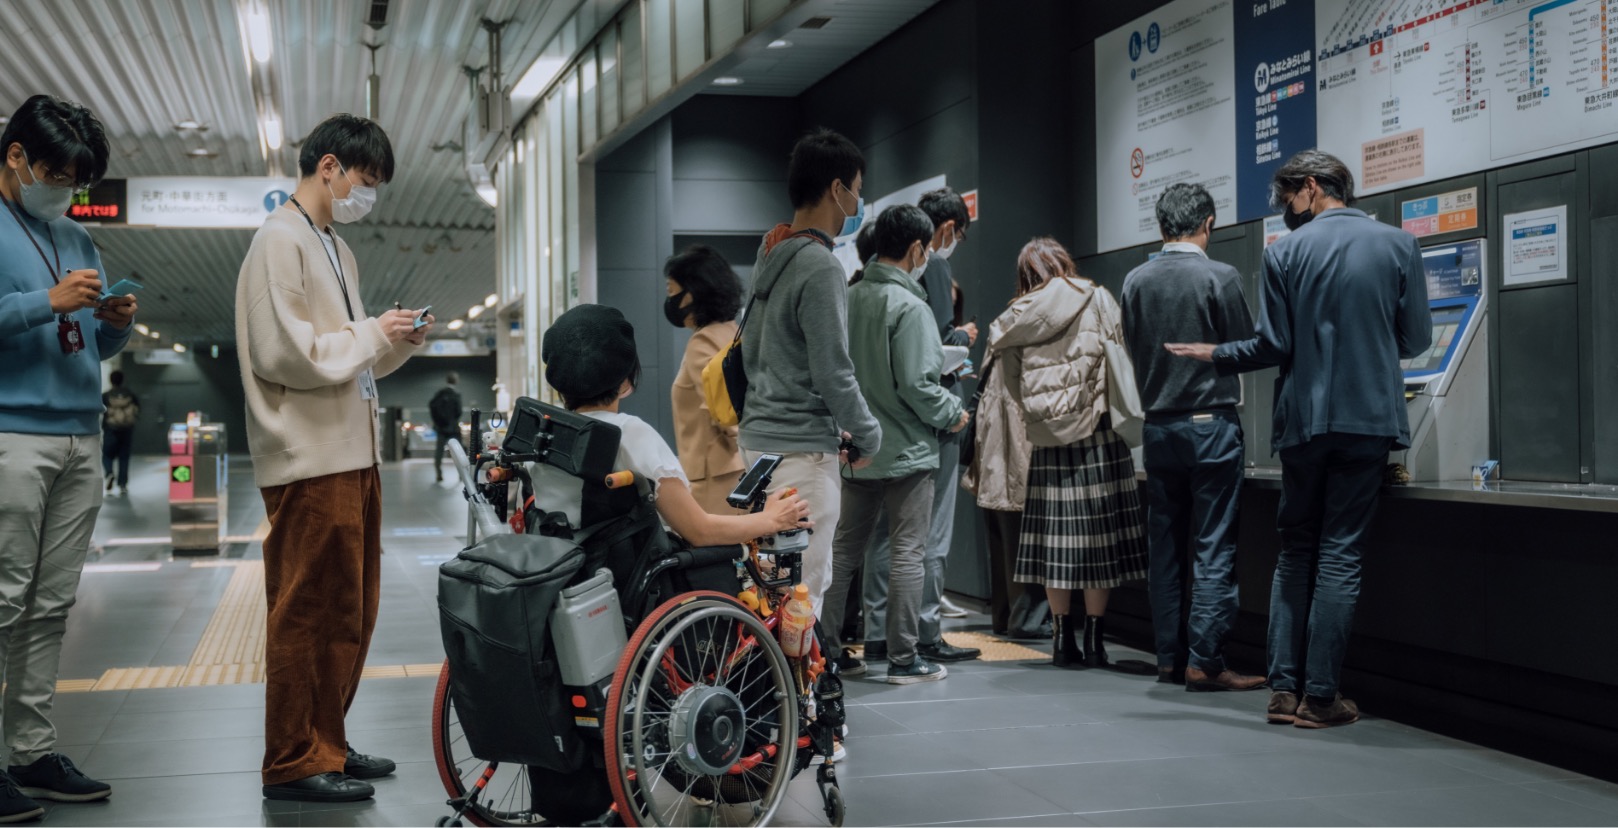 リードユーザーの和久井さんが駅の切符売り場で列に並んでいる写真